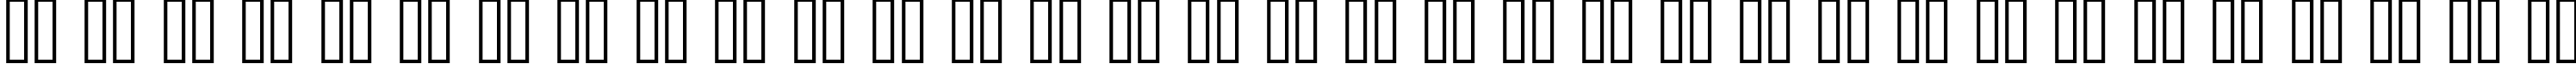 Пример написания русского алфавита шрифтом standard 07_65